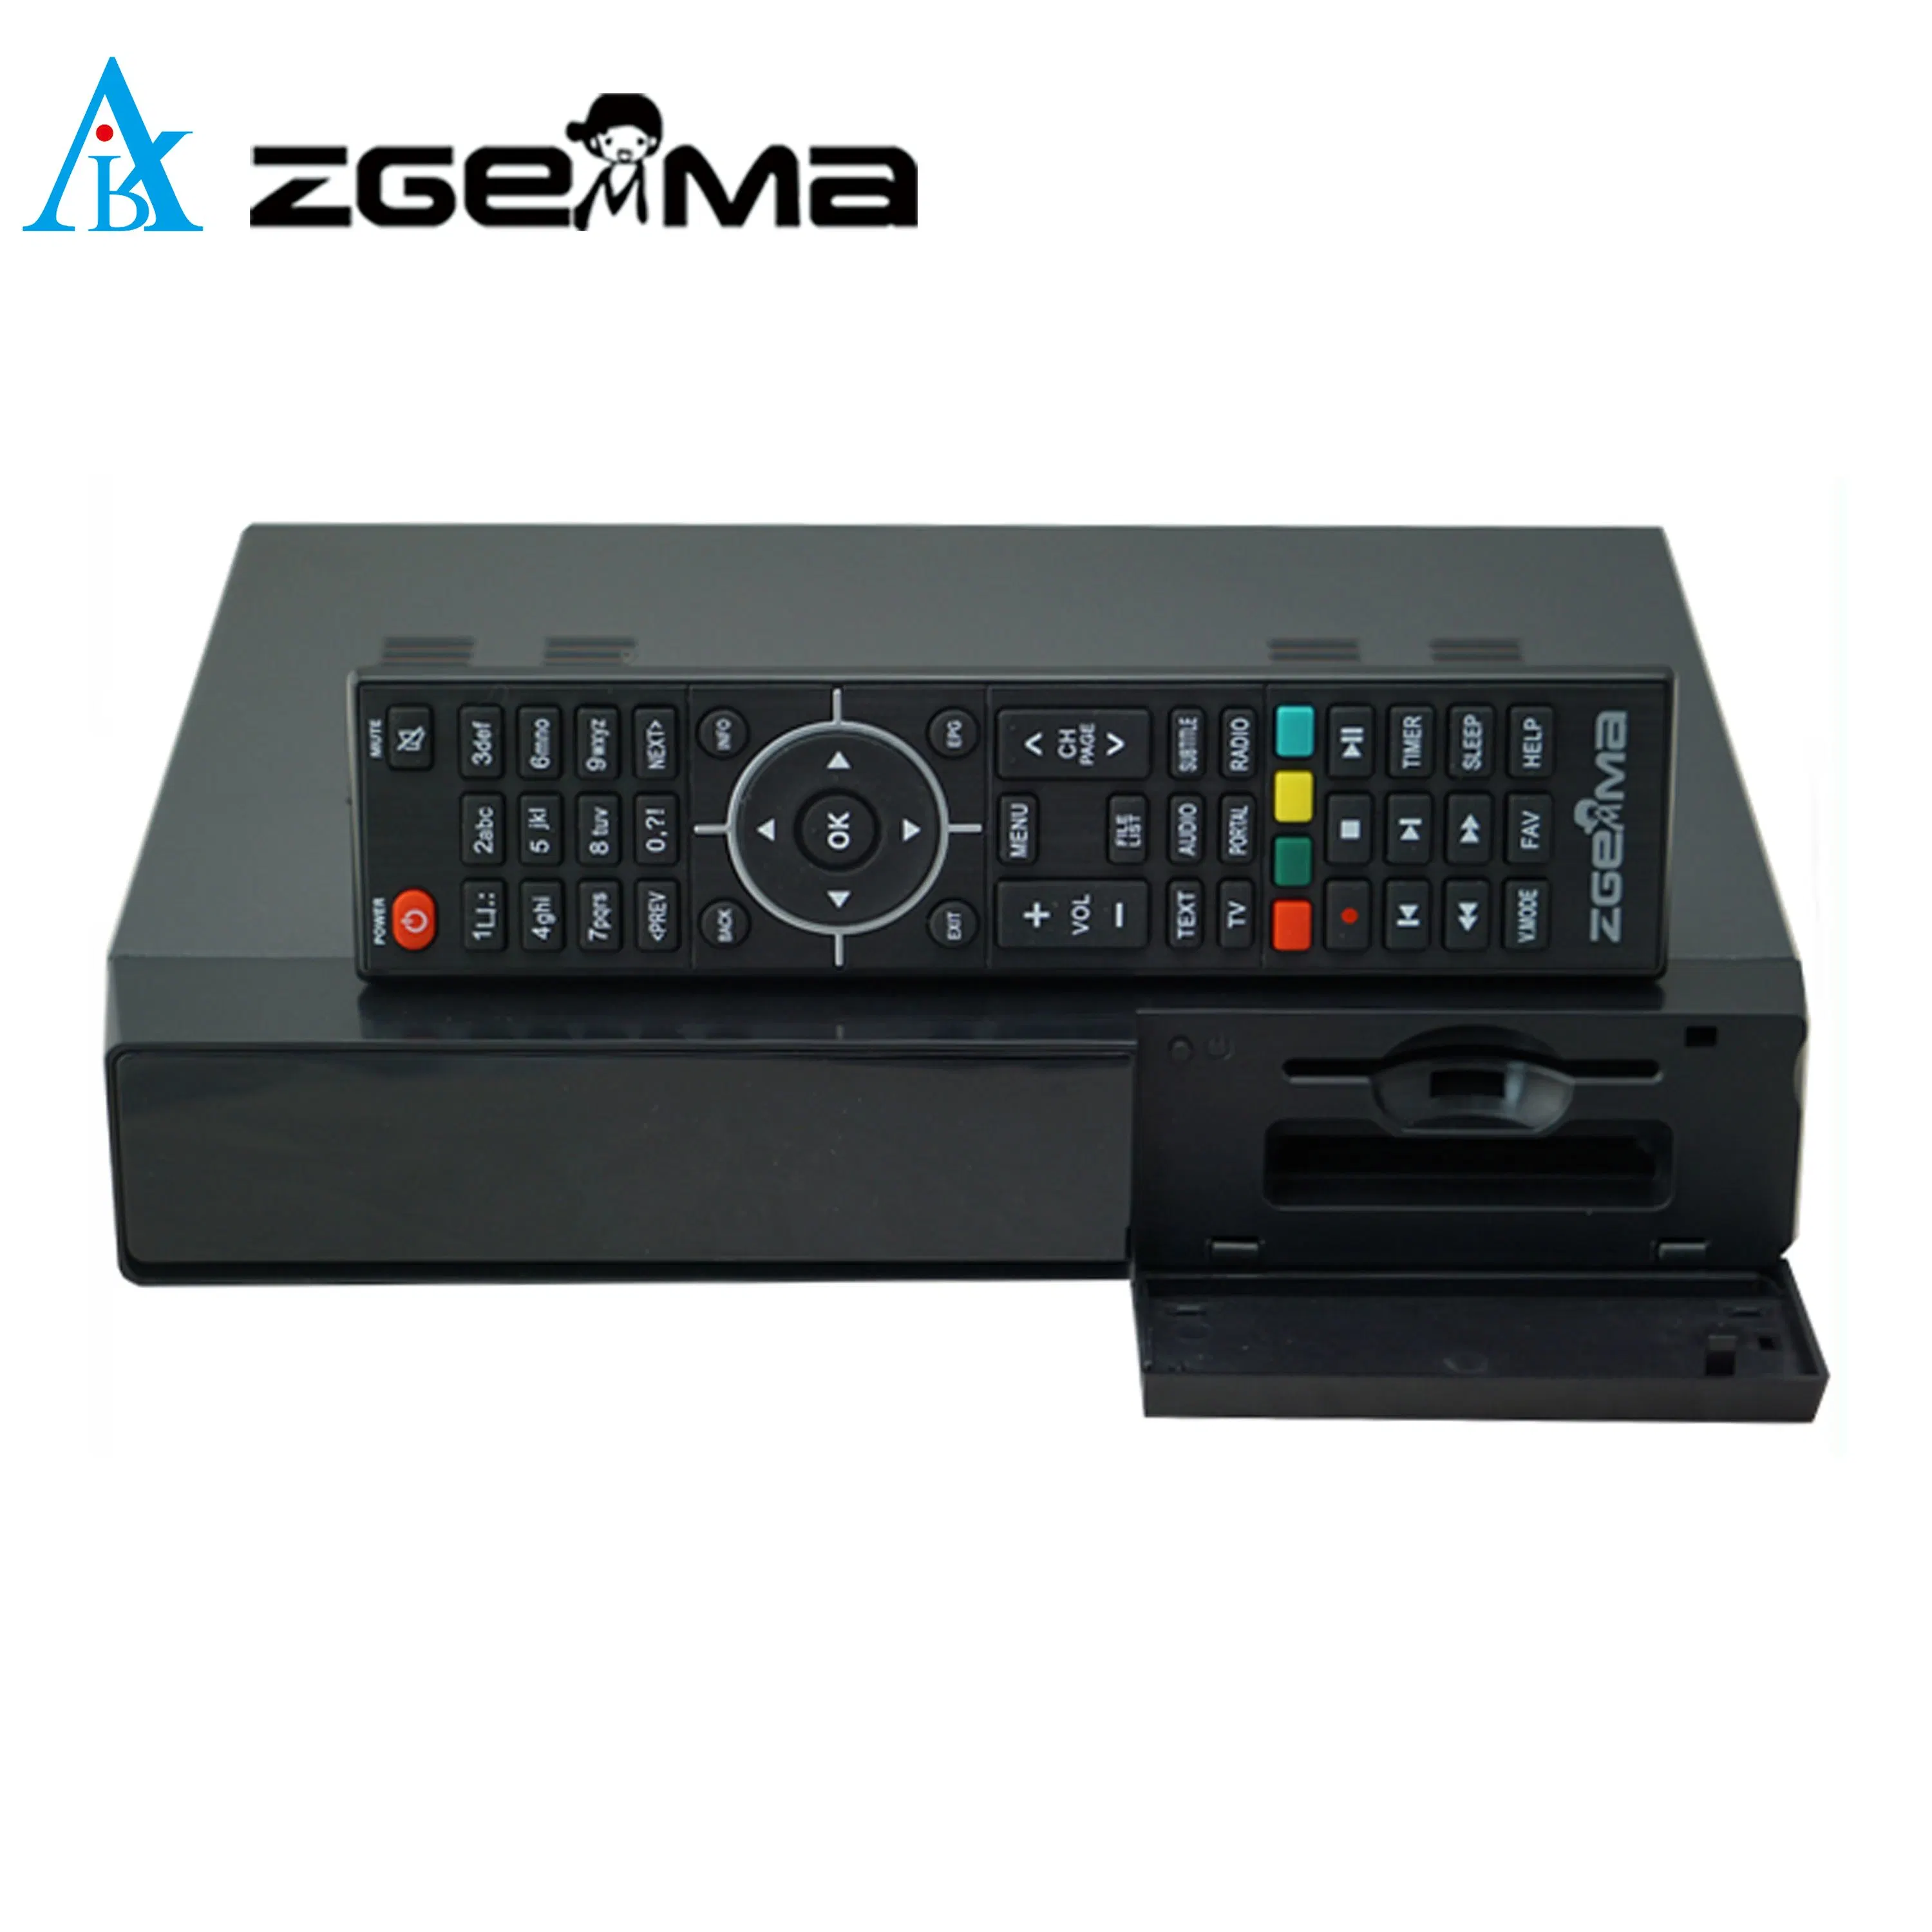 جهاز استقبال تلفزيون Zgemma H7s المجهز لاستقبال إرسال القمر الصناعي - Enigma2 Linux OS، 2*DVB-S2/S2X + DVB-T2/C Hybrid Tuner TV Decoder